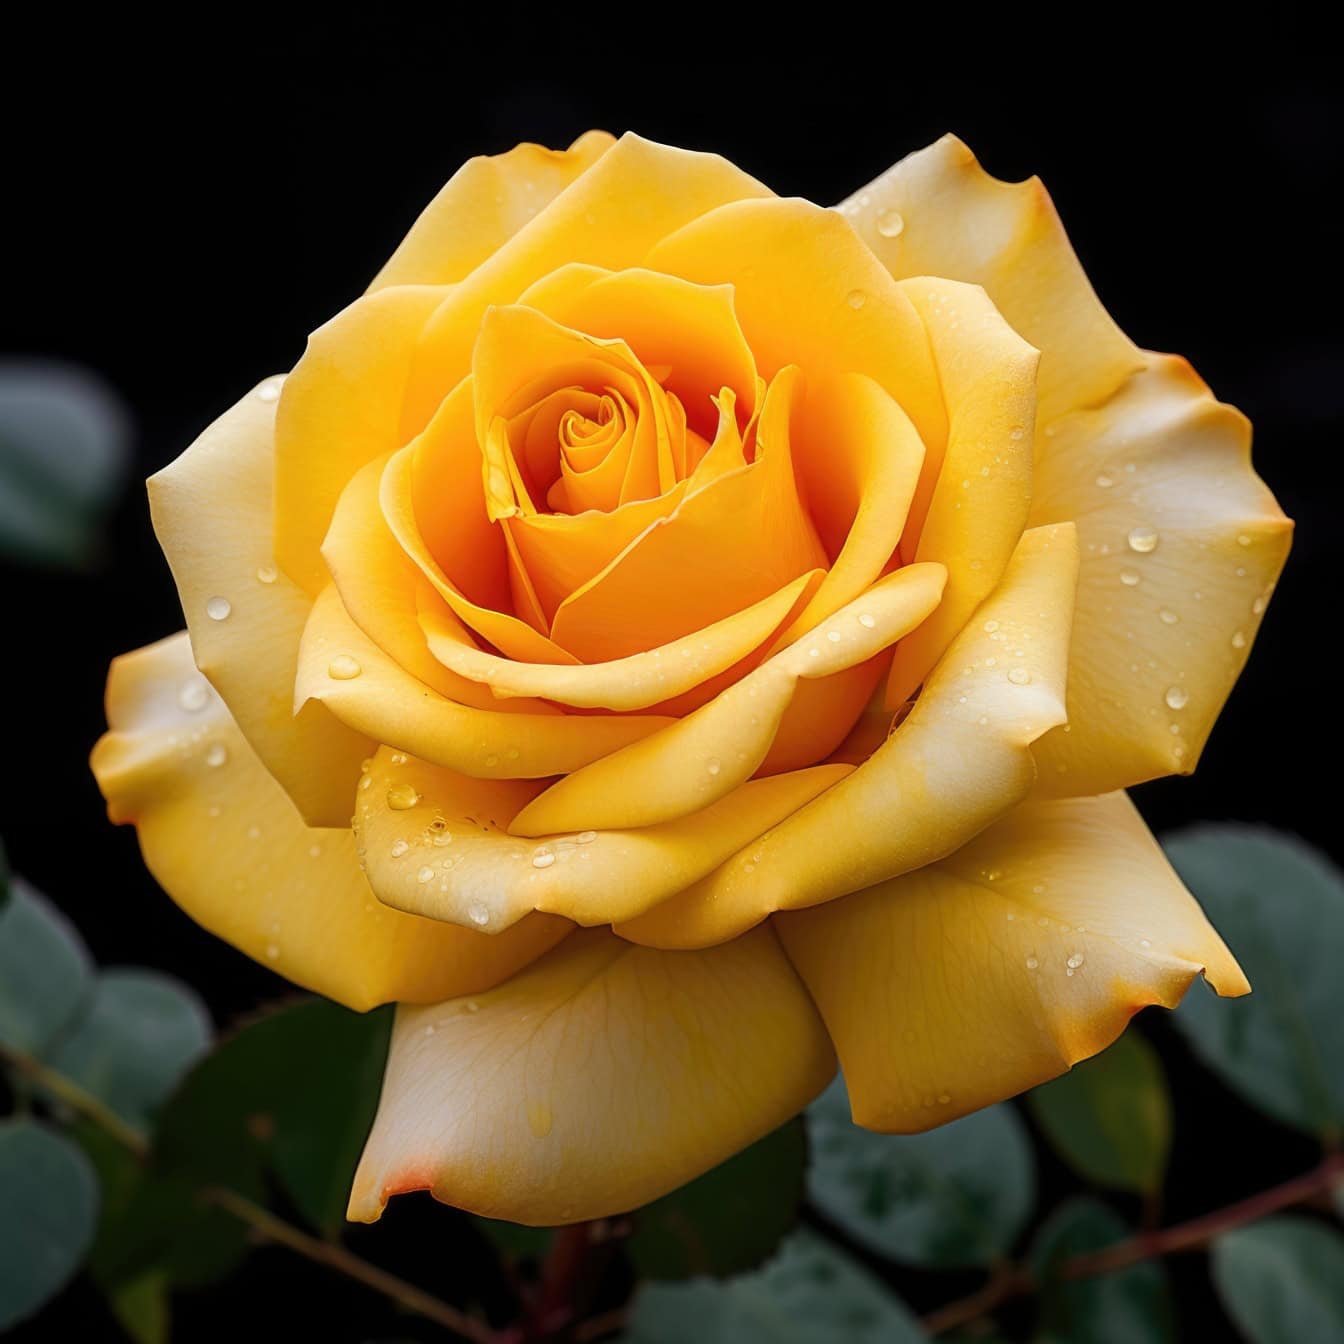 Afbeelding van pastel gele roos met waterdruppels erop